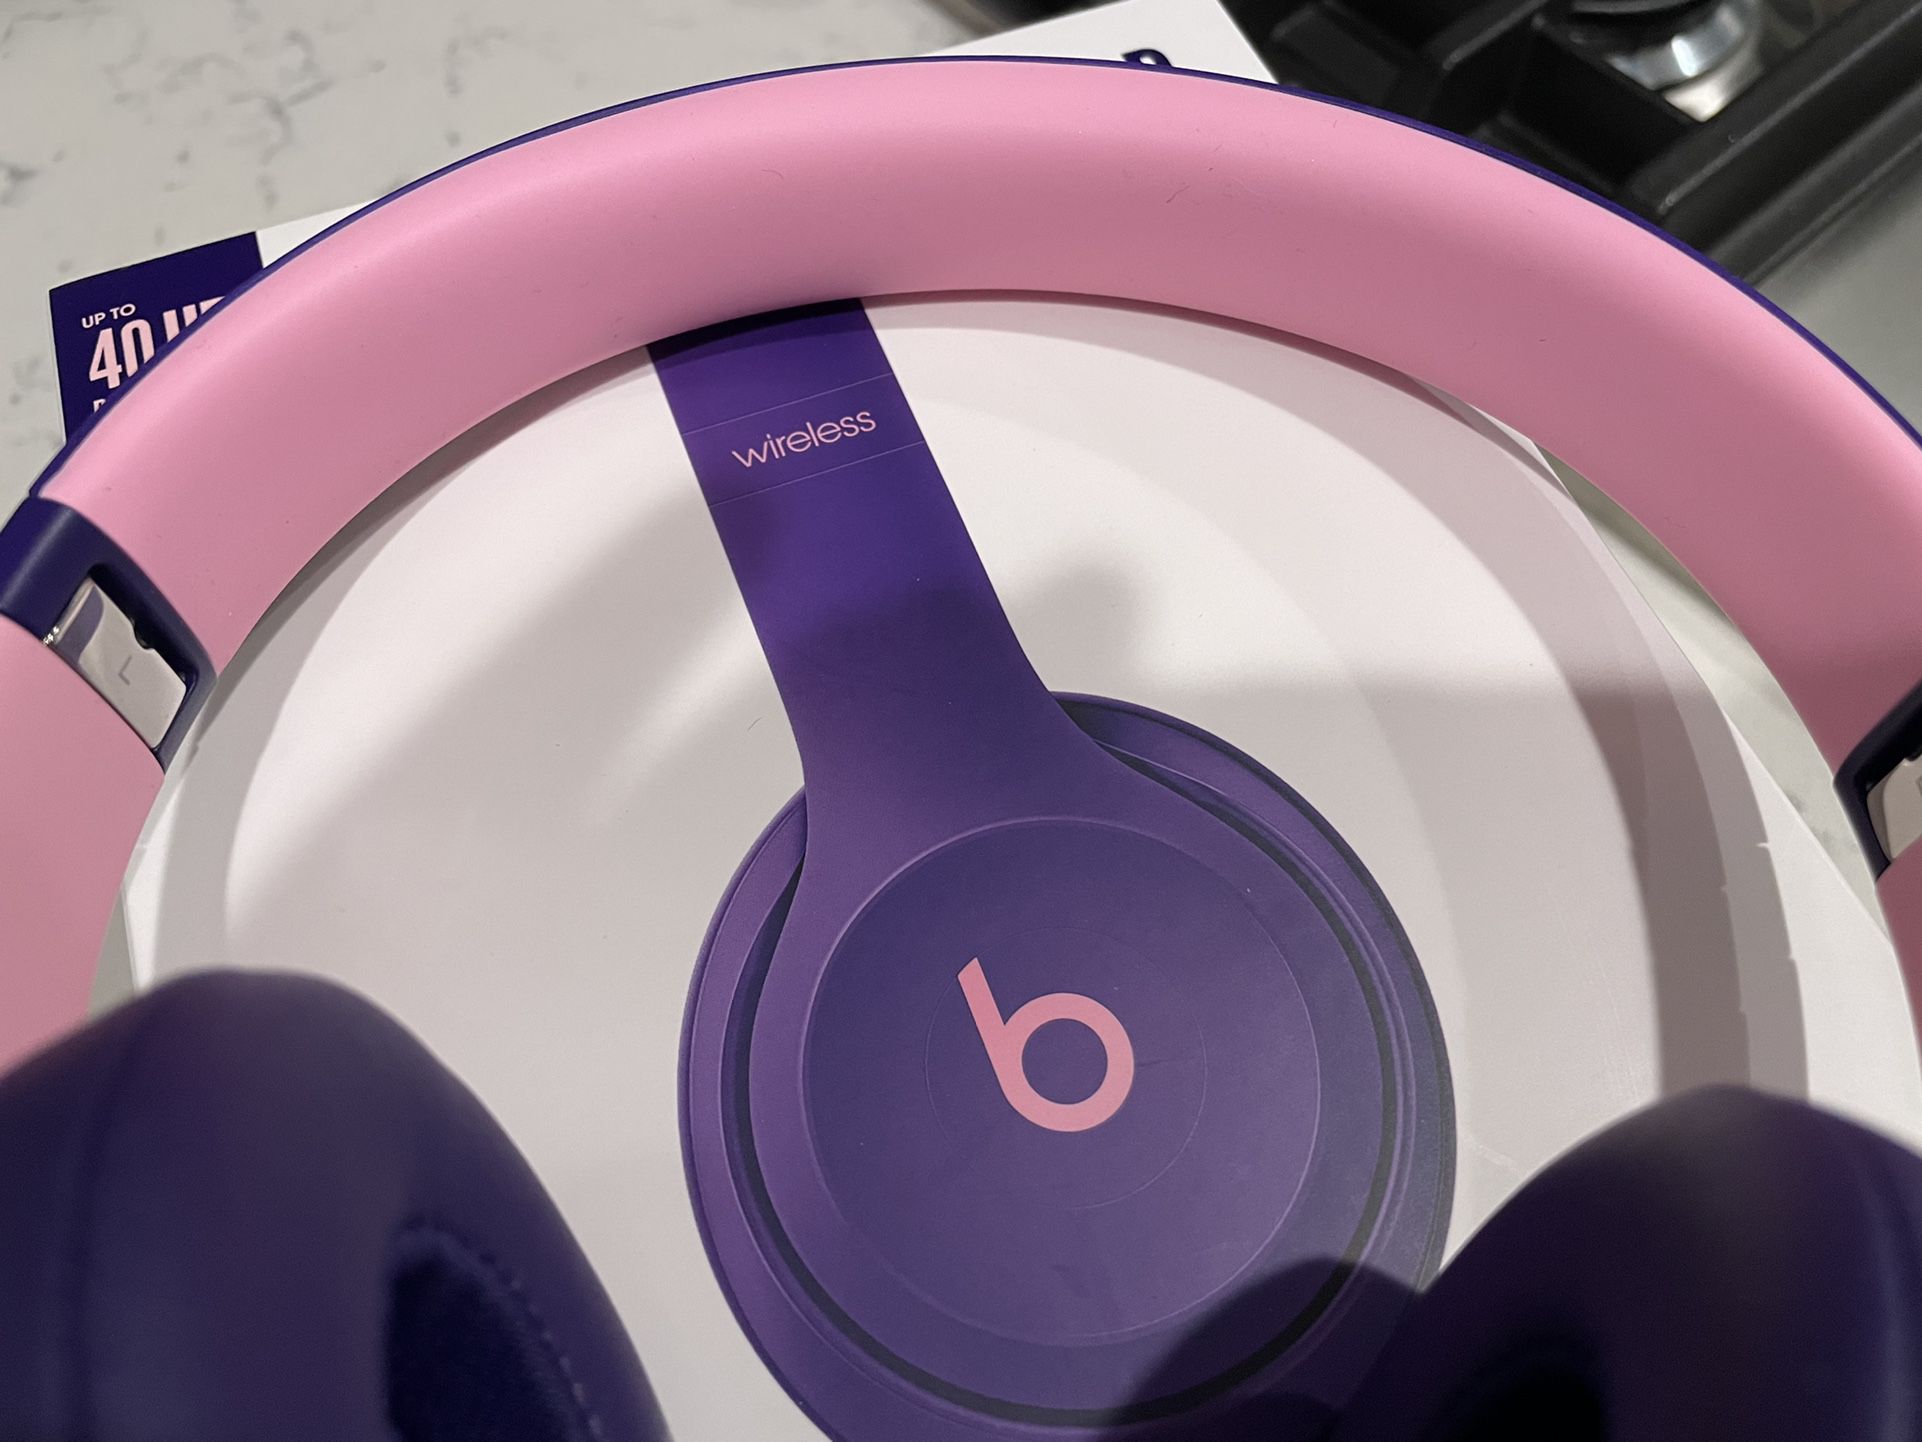 droogte Verpersoonlijking Daar Wireless Beats SOLO 3 Headphones ( Purple And Pink) for Sale in Pfafftown,  NC - OfferUp